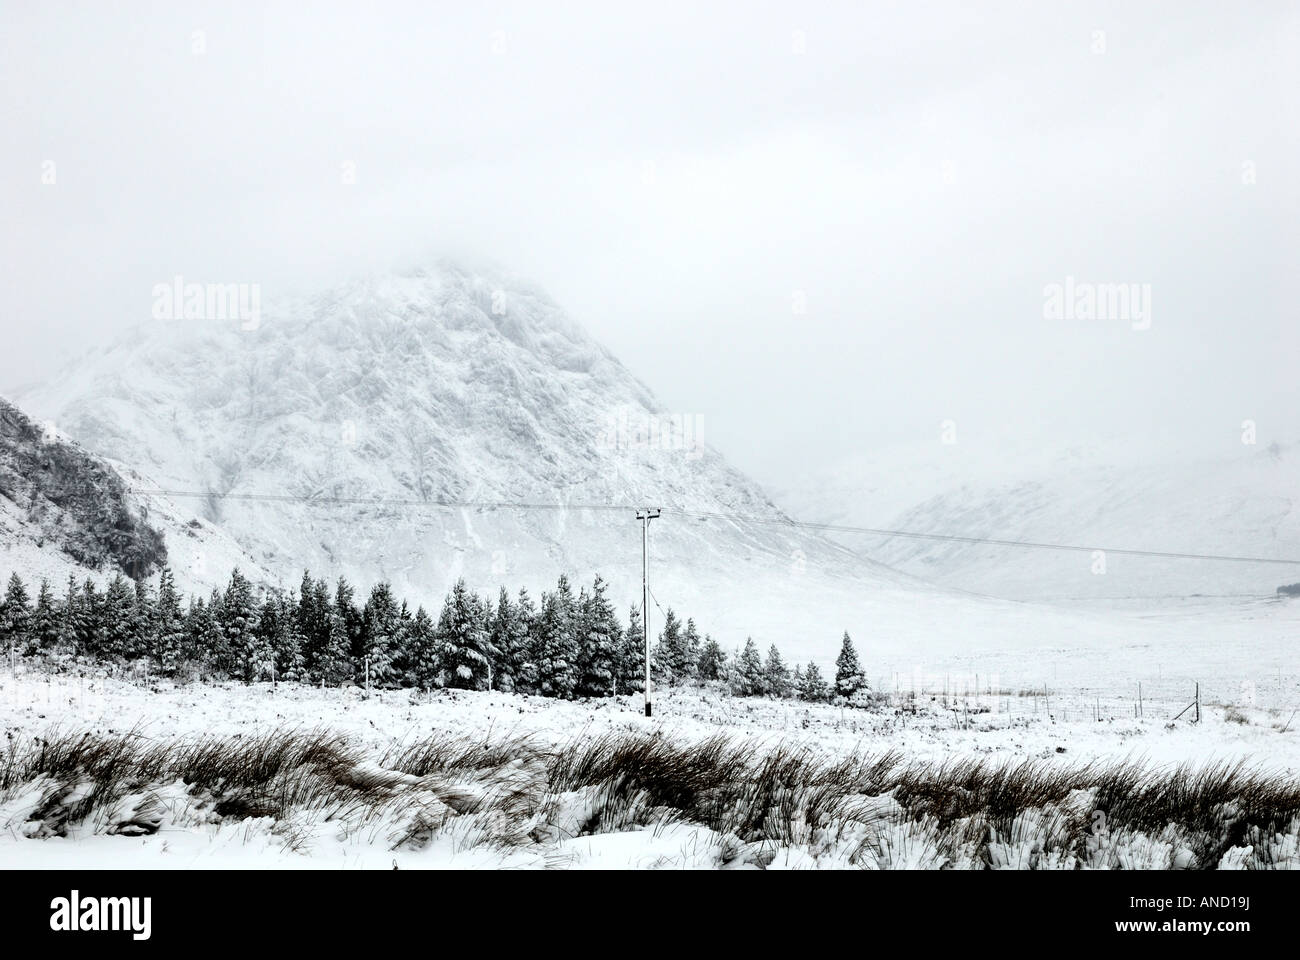 Glencoe nel profondo dell'inverno con una tempesta di neve in corso. Foto Stock